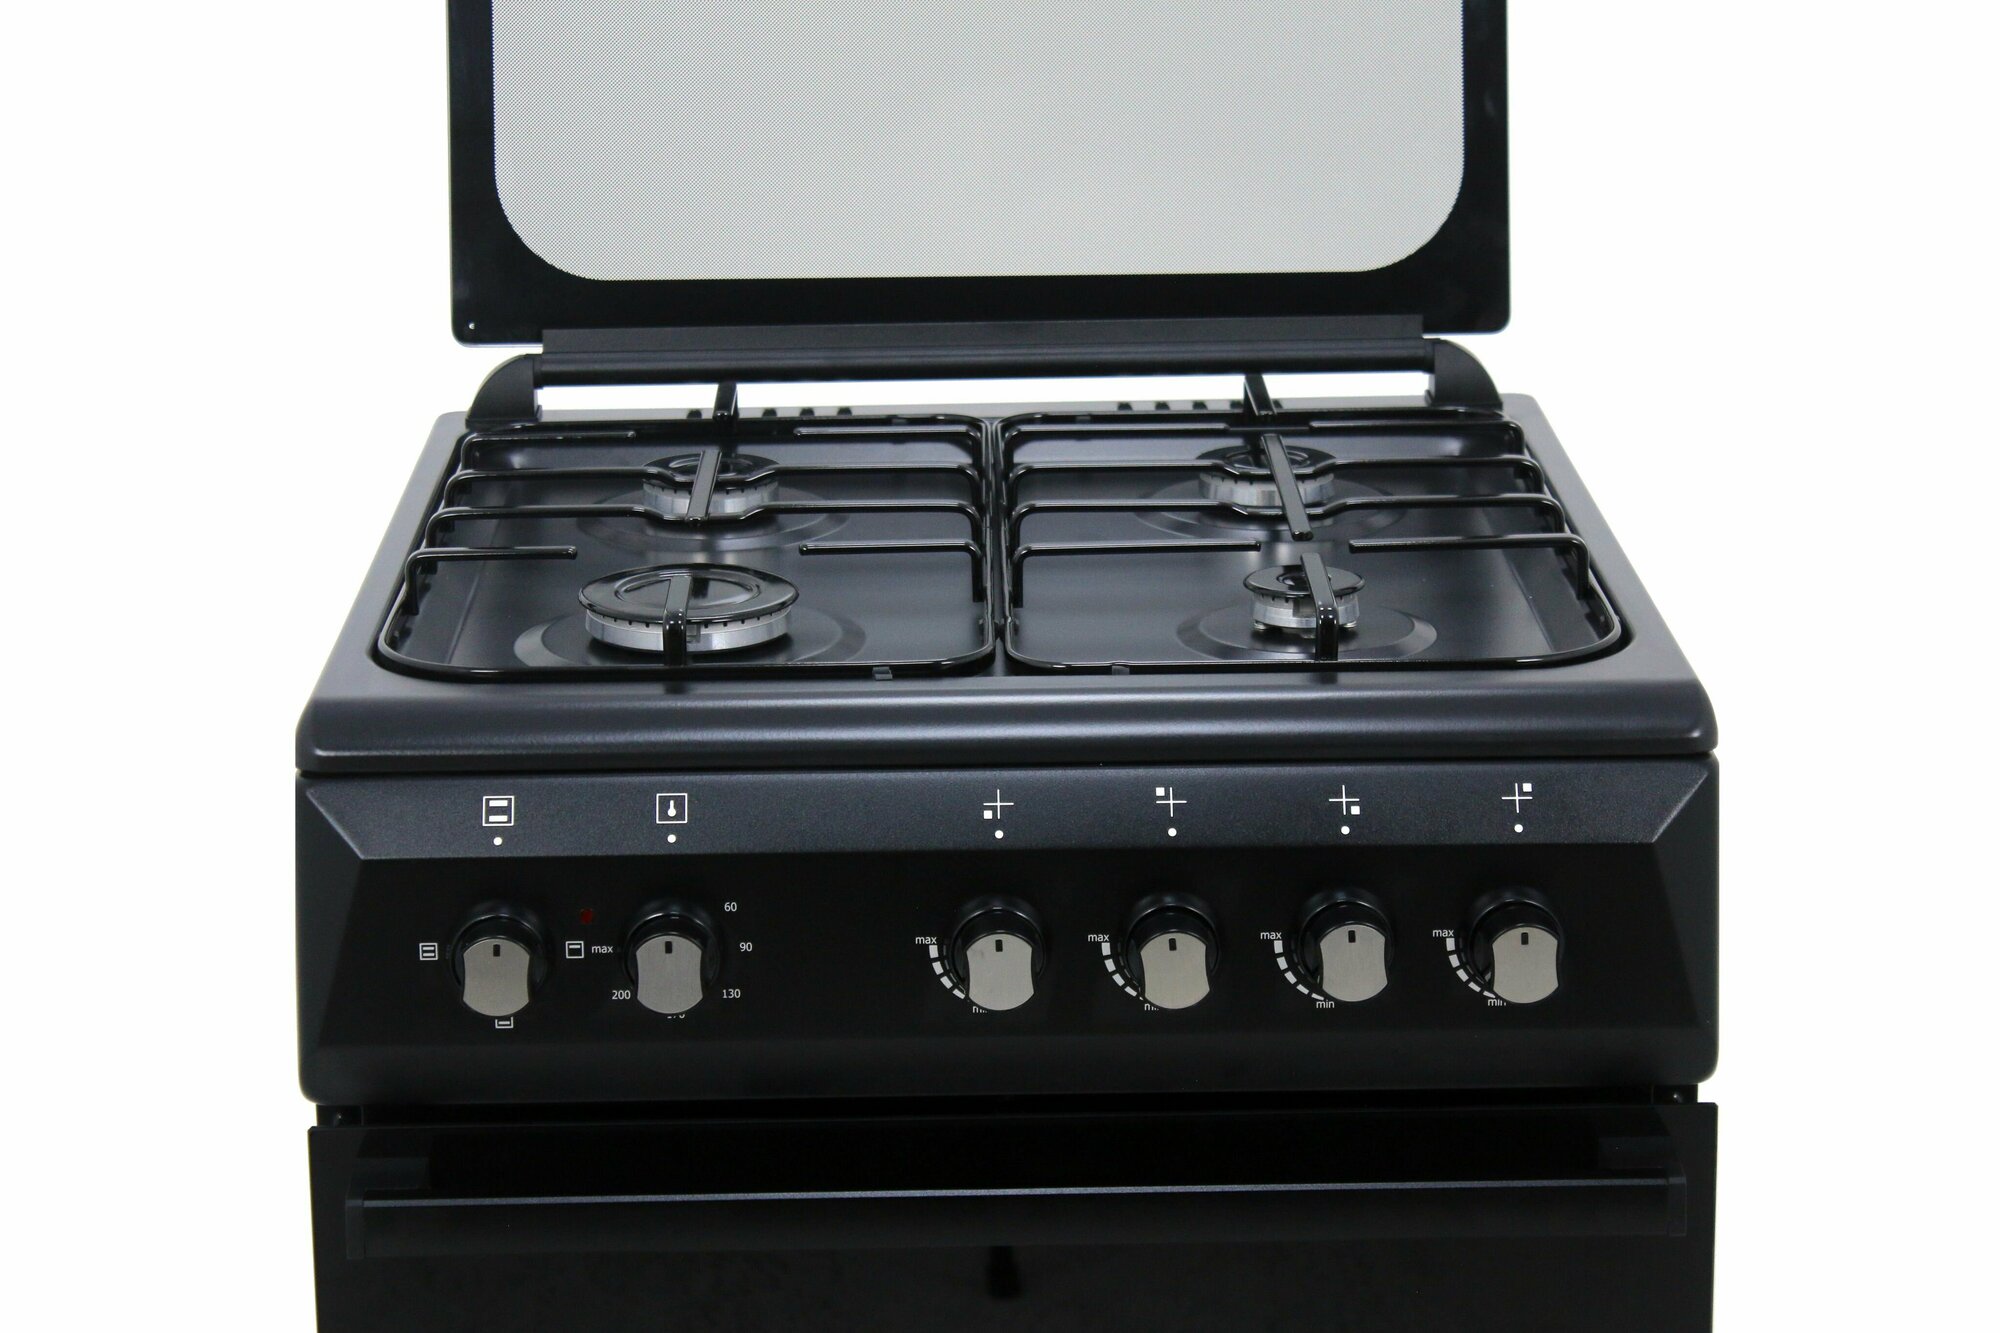 Комбинированная плита Danke 606003гэ Серый цвет в размере 60x60см с электрической духовкой